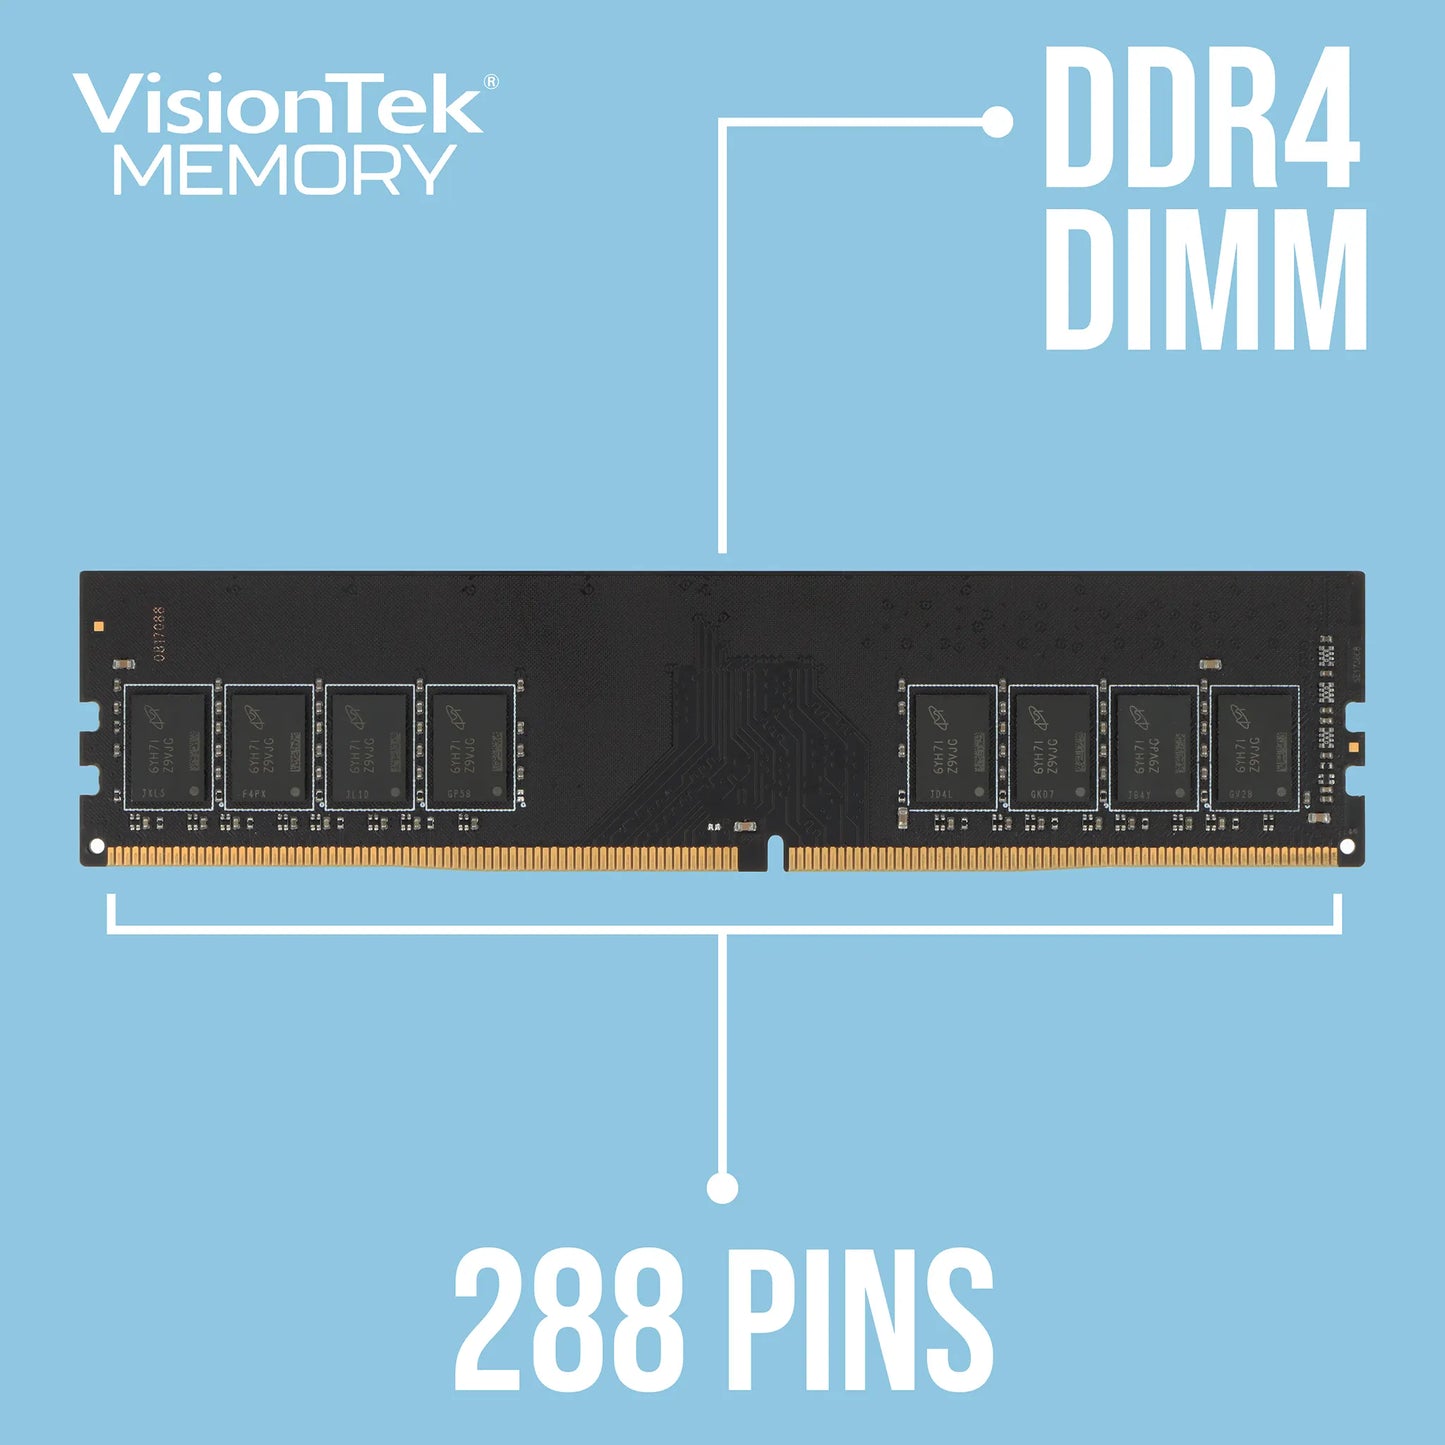 DDR4 - 2666MHz - CL19 - DIMM - Desktop